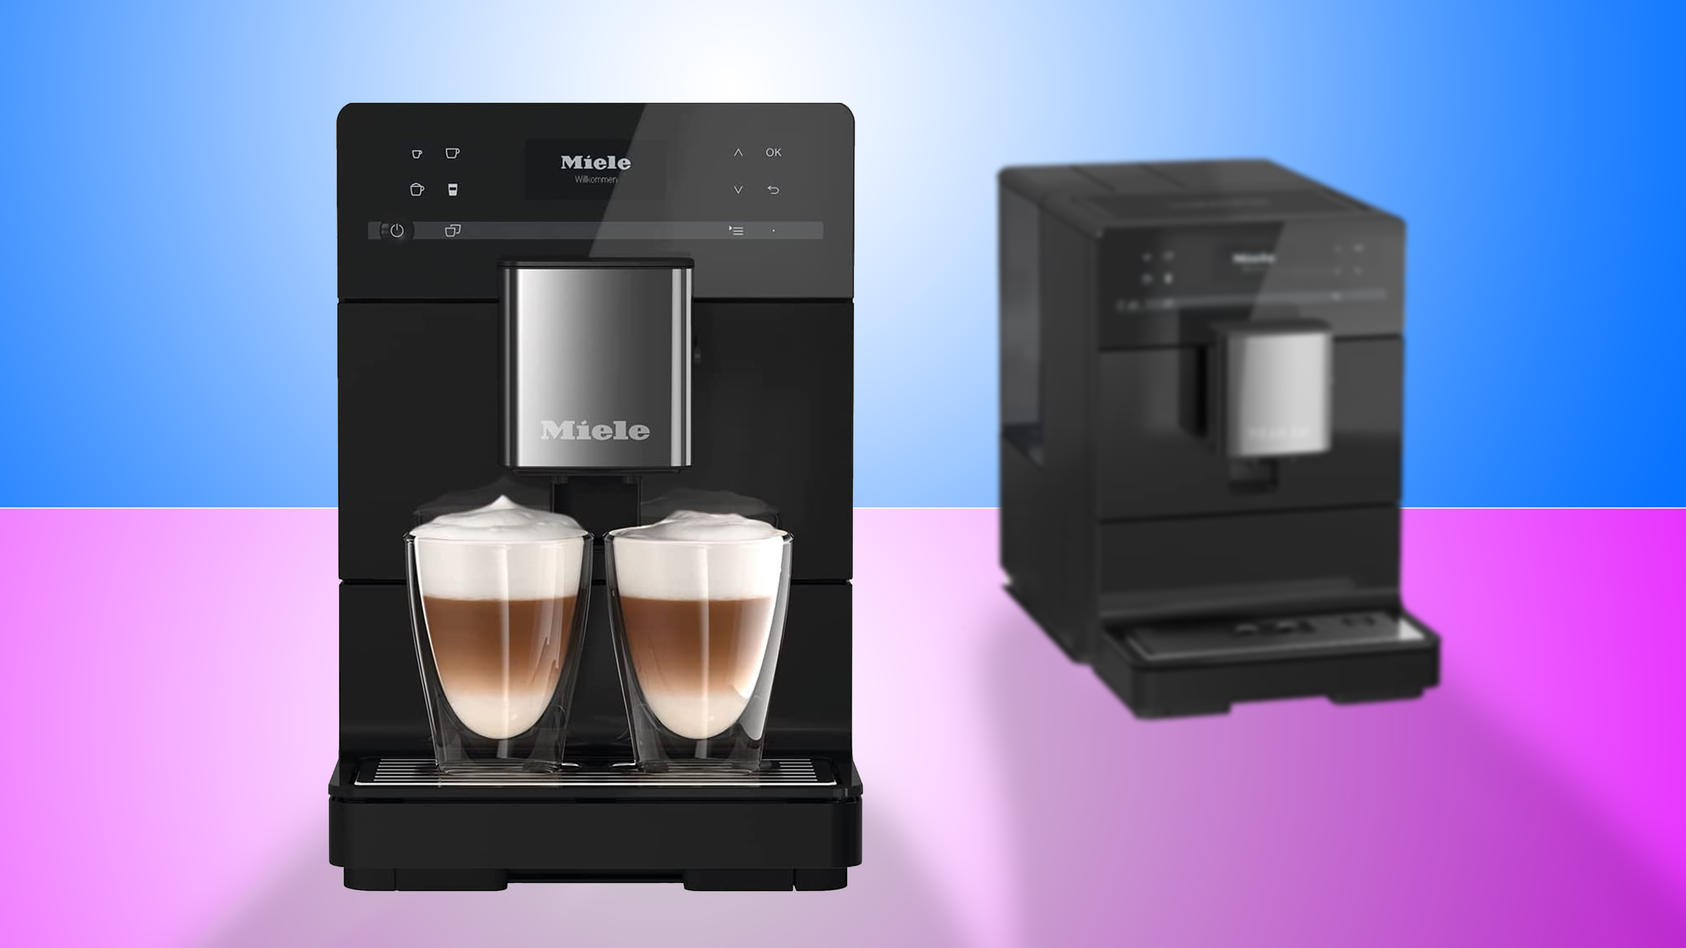 miele-kaffeevollautomat-es-erwartet-sie-ein-aromatischer-deal-am-cyber-monday